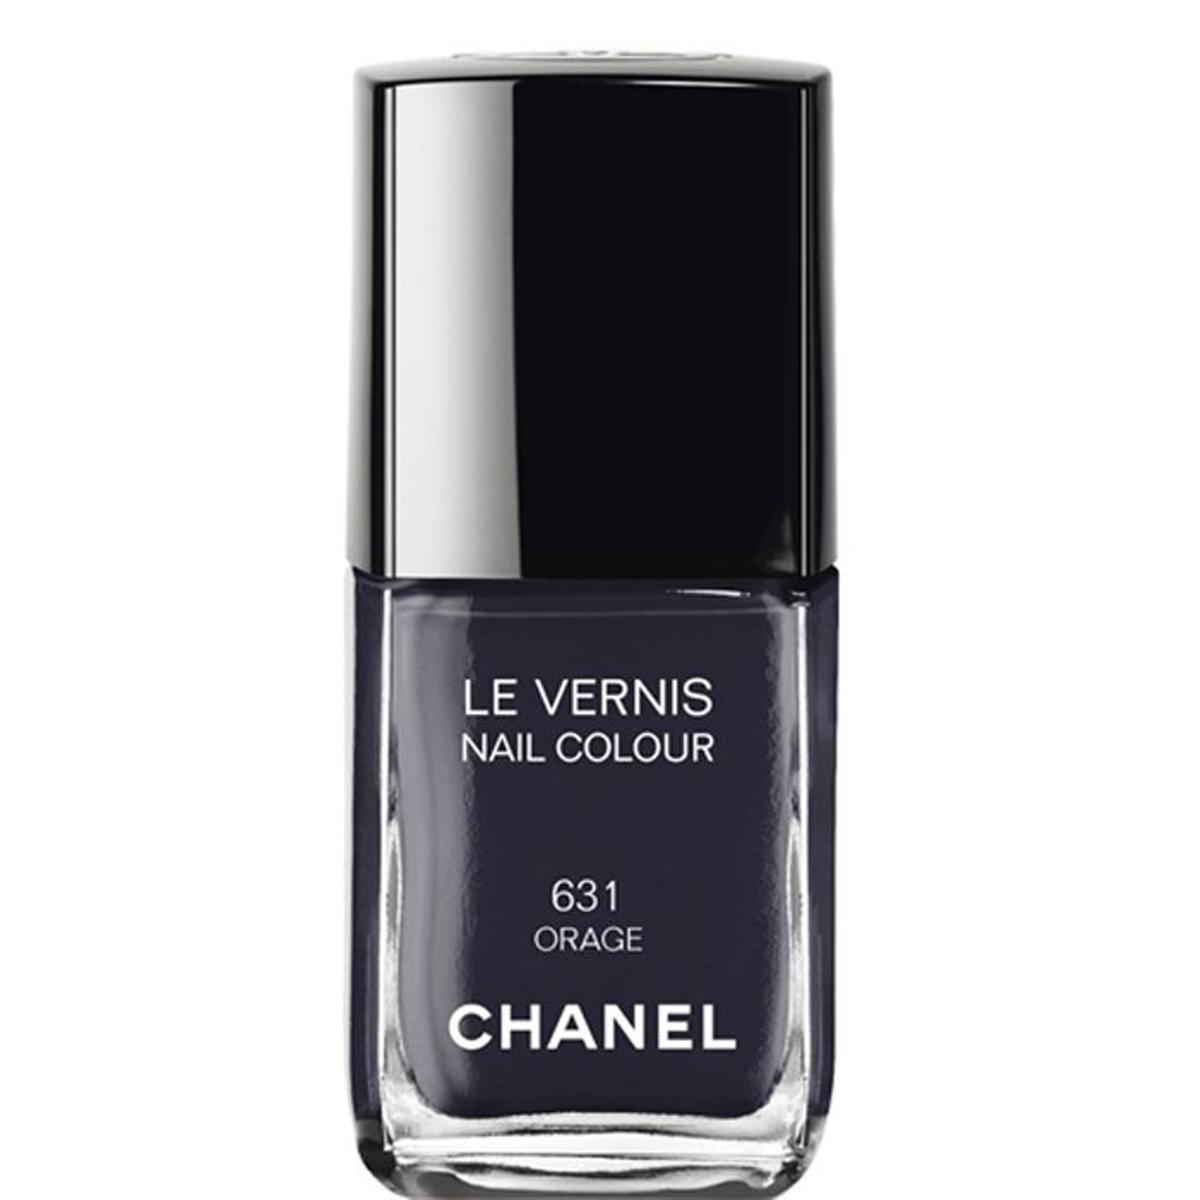 1. Le Vernis Nail Colour 631 Orange, Chanel